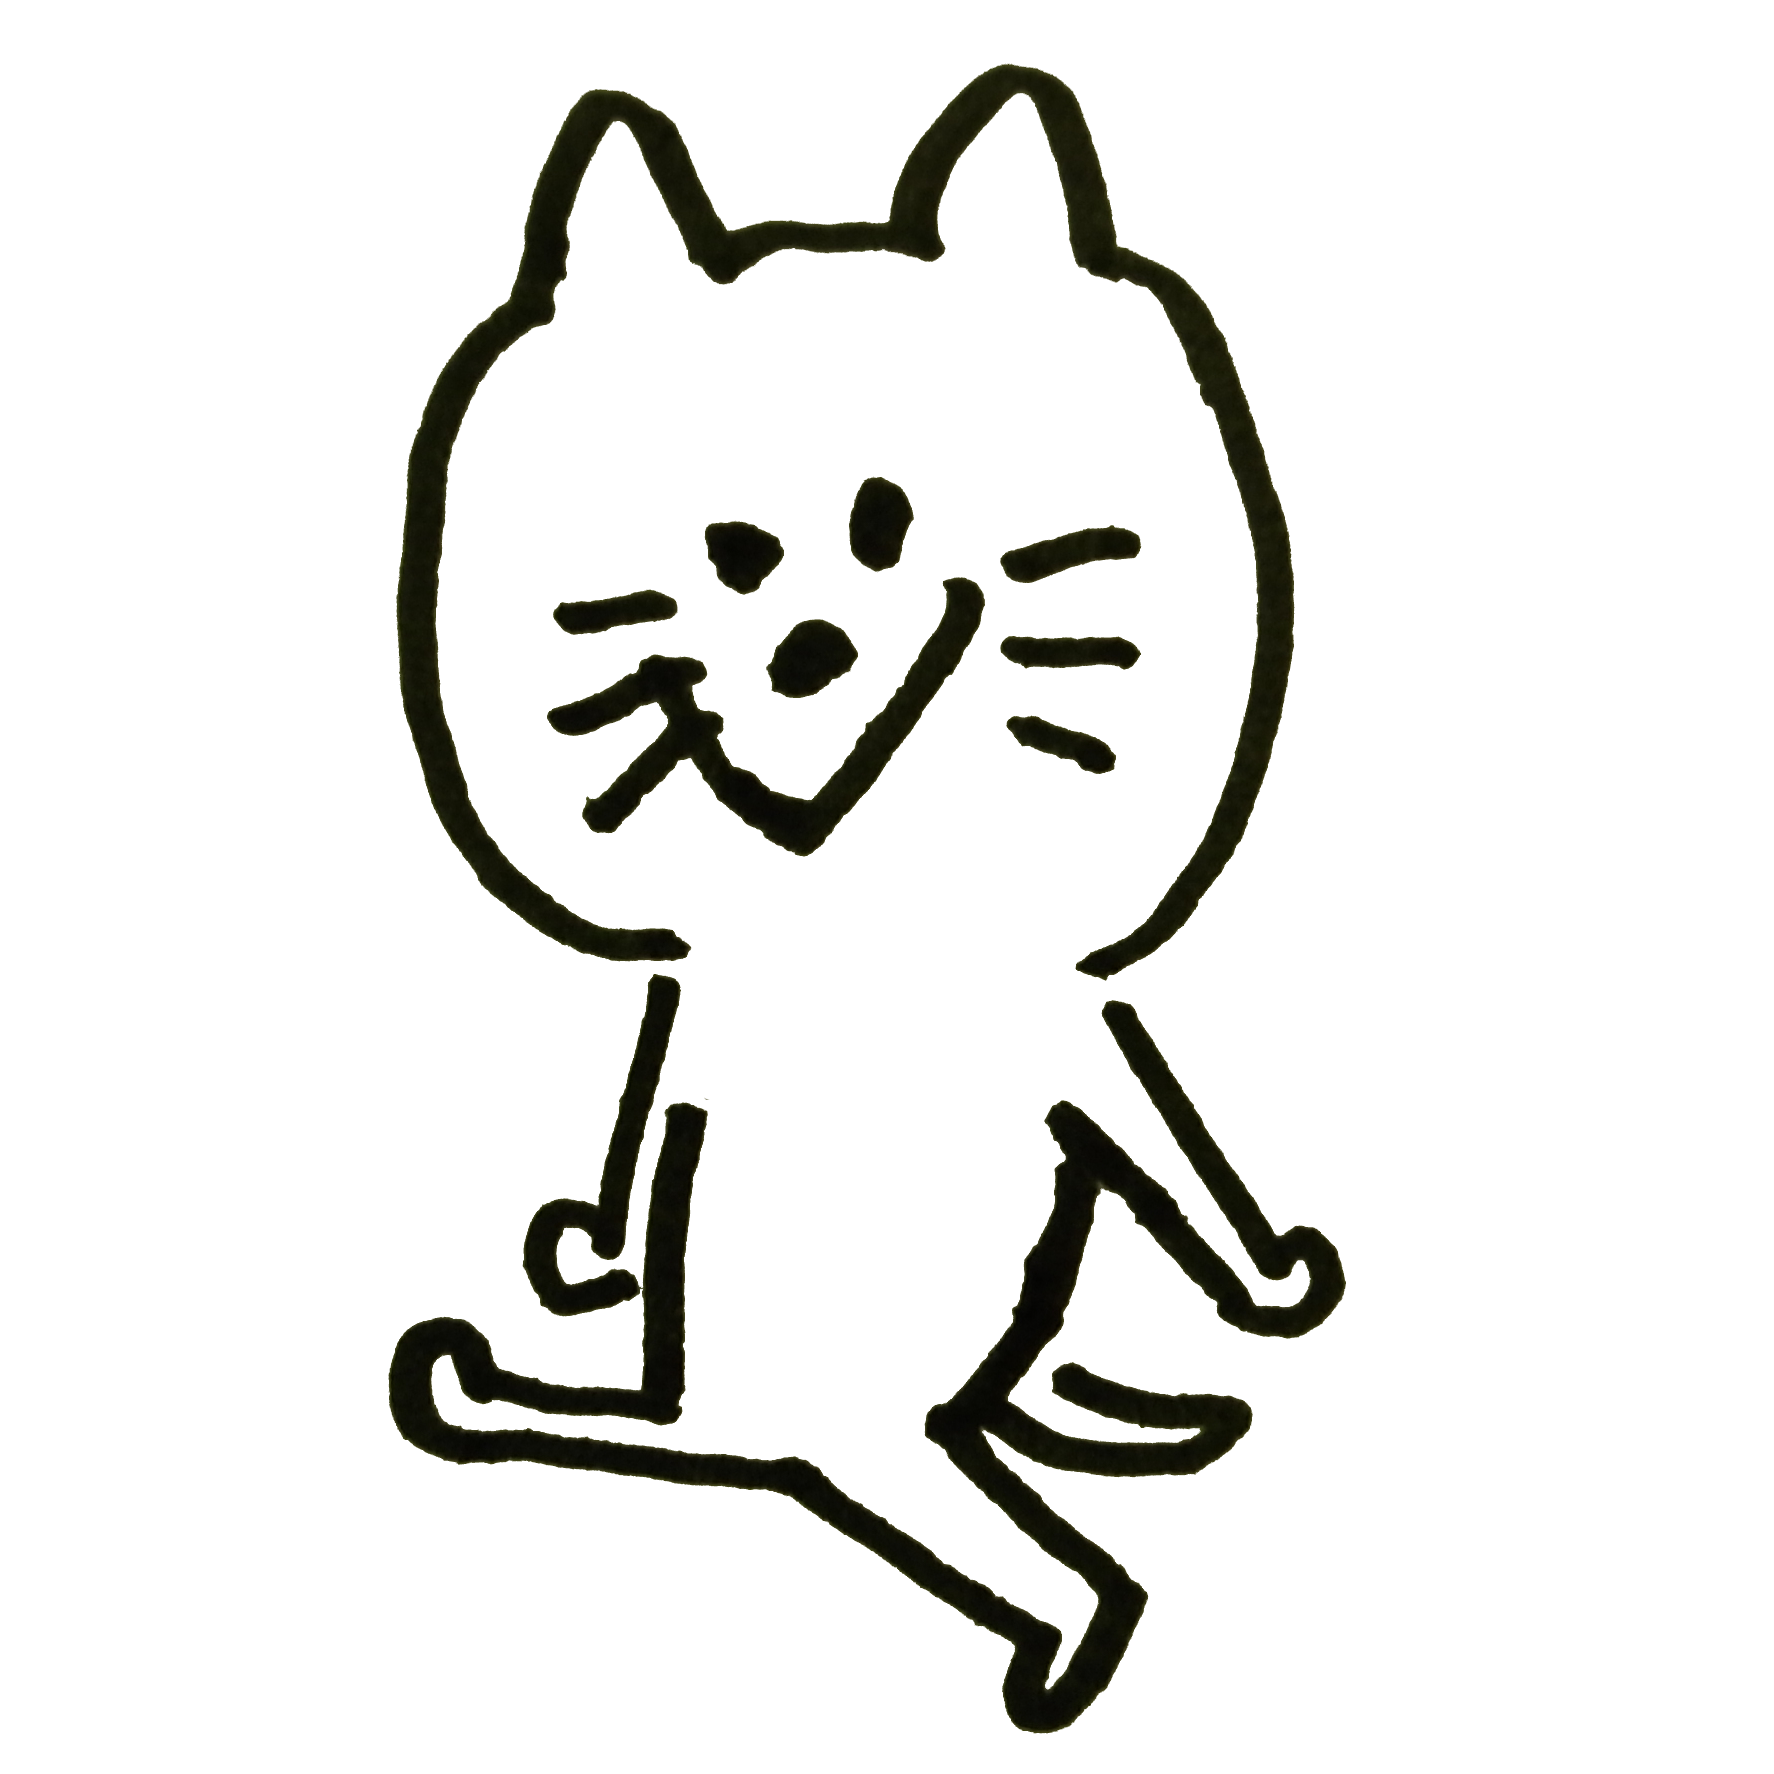 ニヤニヤ笑う猫のイラスト ゆるくてかわいい無料イラスト アイコン素材屋 ぴよたそ